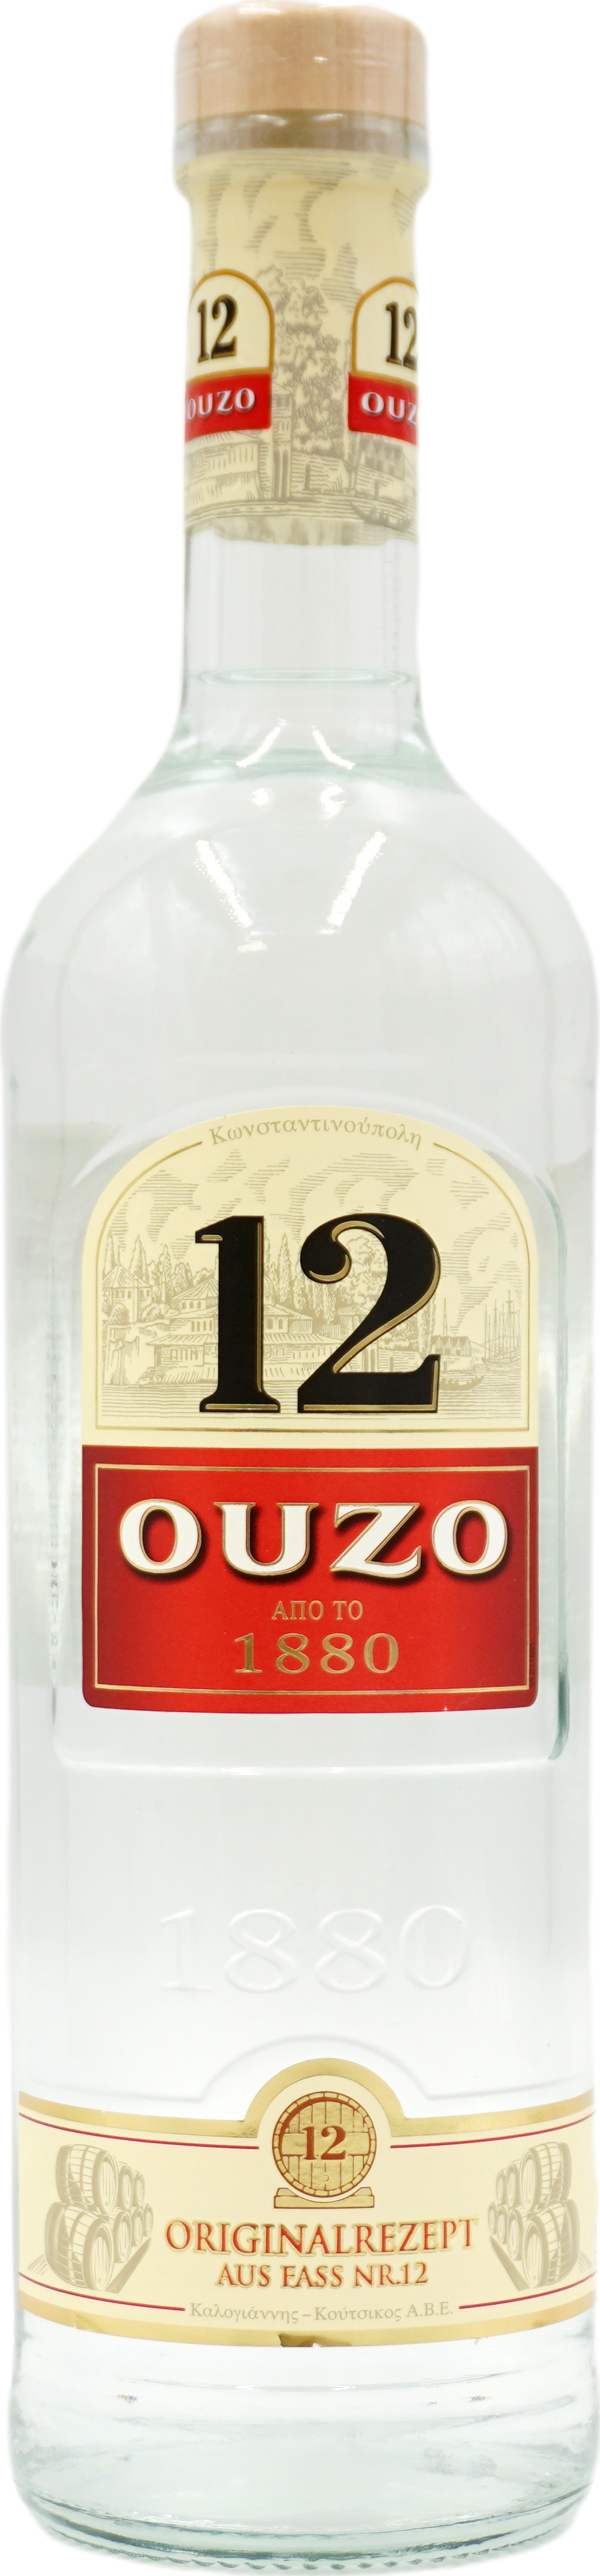 Ouzo 12 38% online liefern jetzt Getränke-Service bestellen lassen! & | KACHOURI